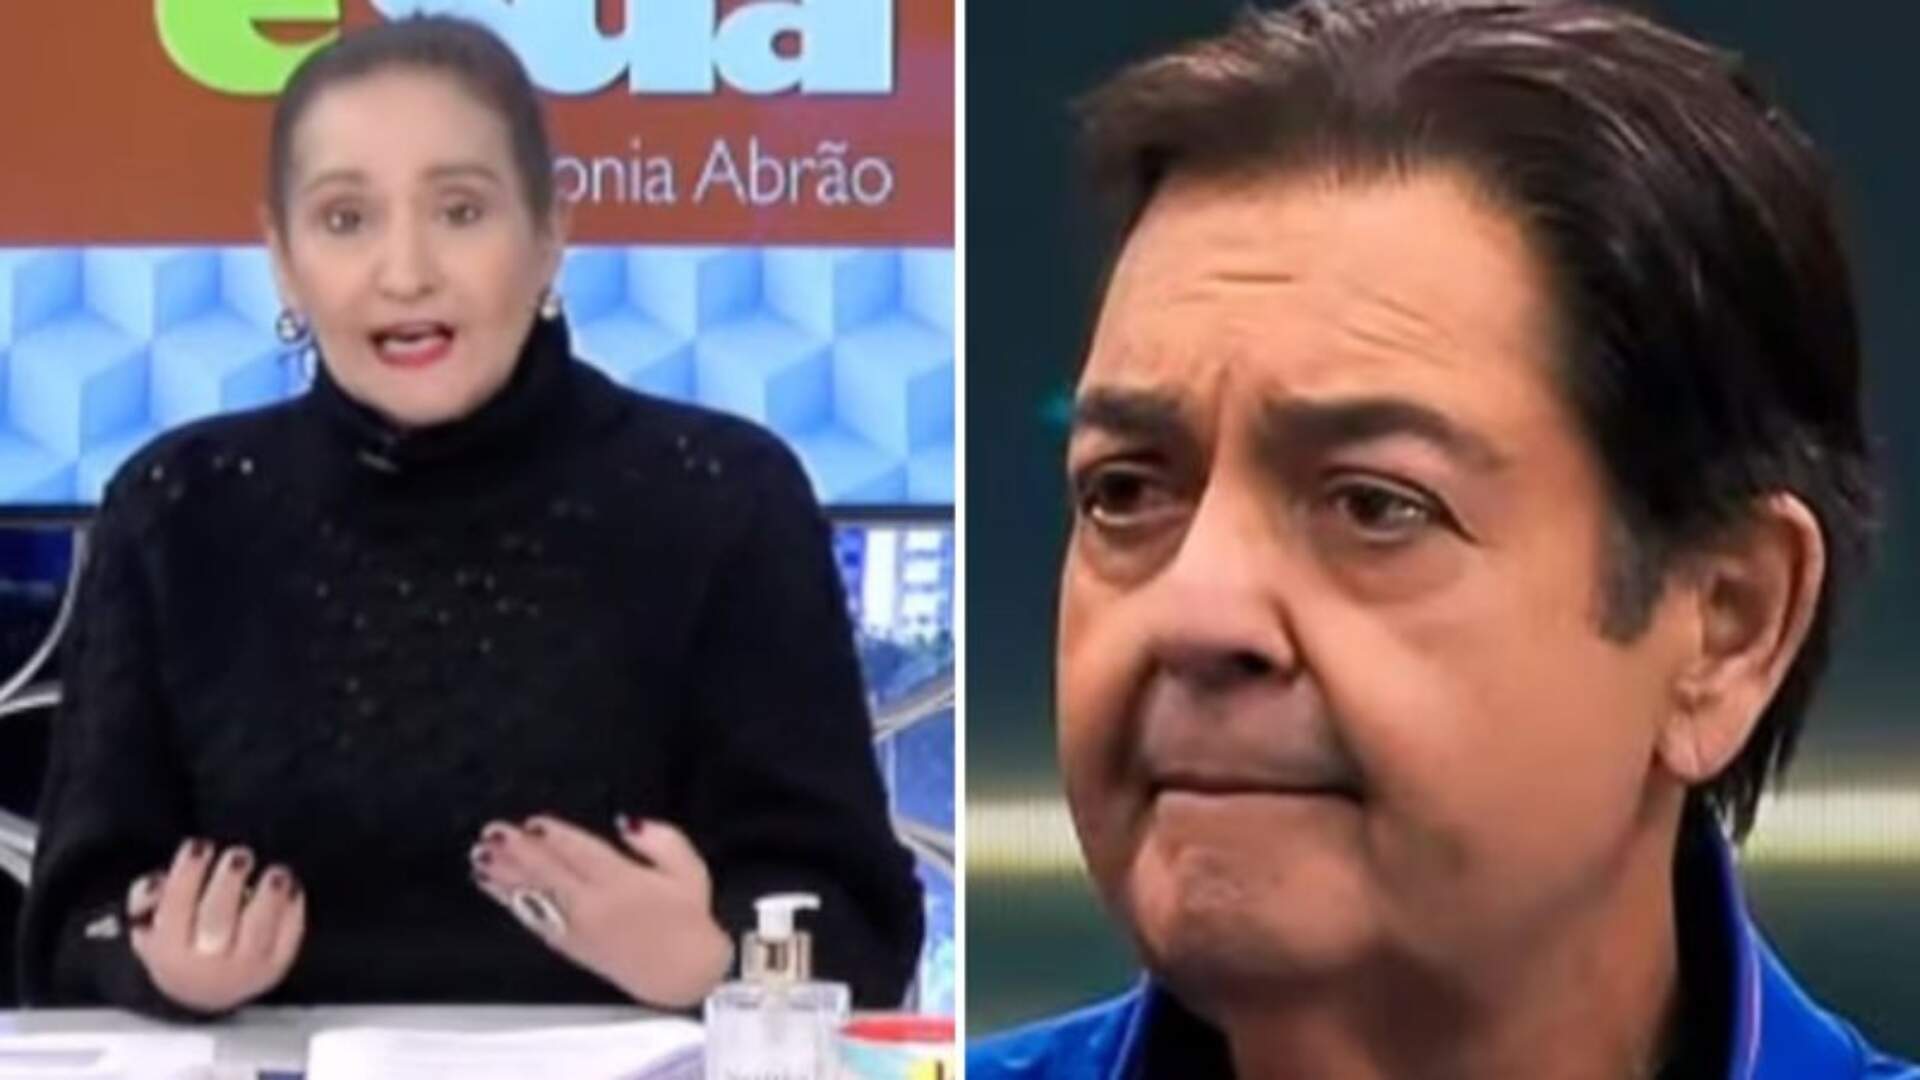 Sonia Abrão e Fausto Silva